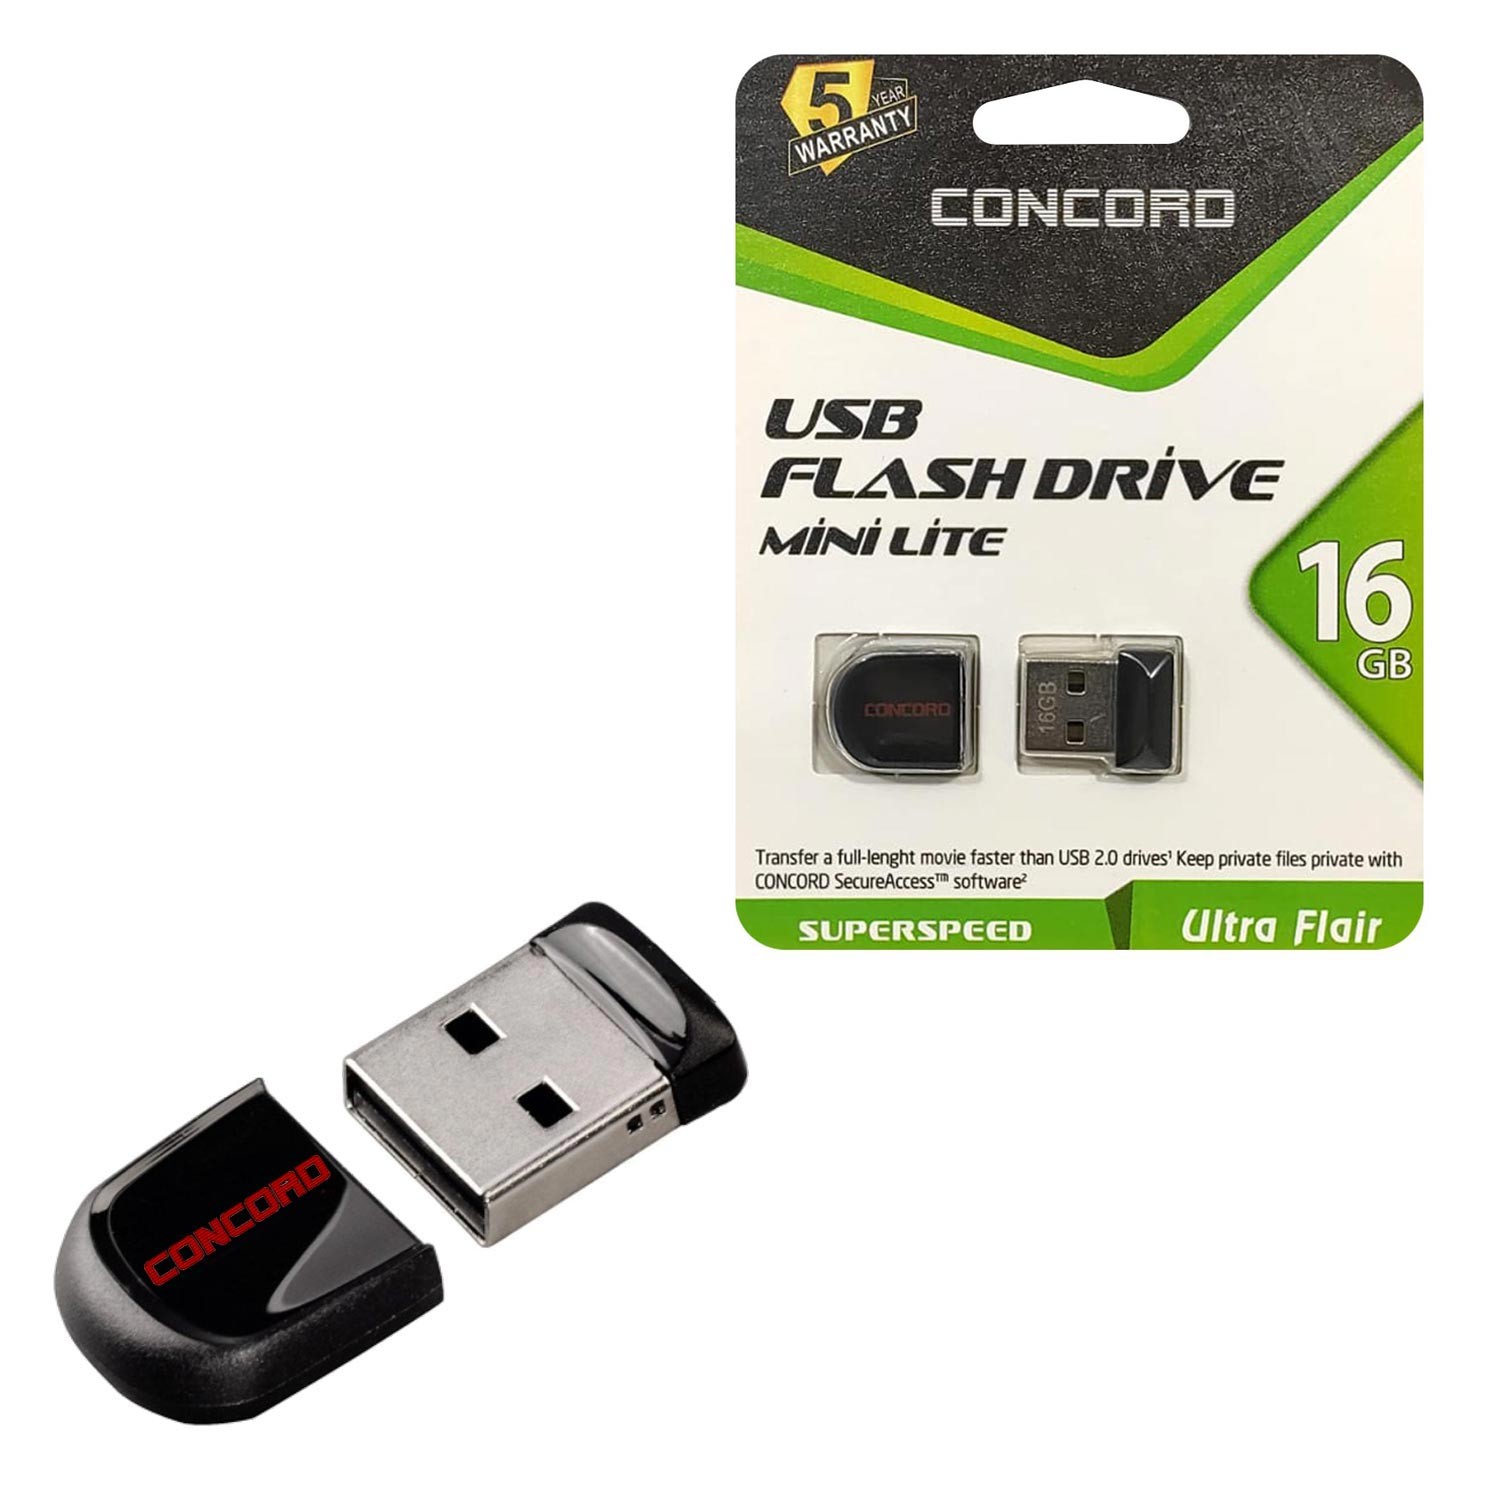 USB FLASH BELLEK 16GB MINI LITE CONCORD C-UML16